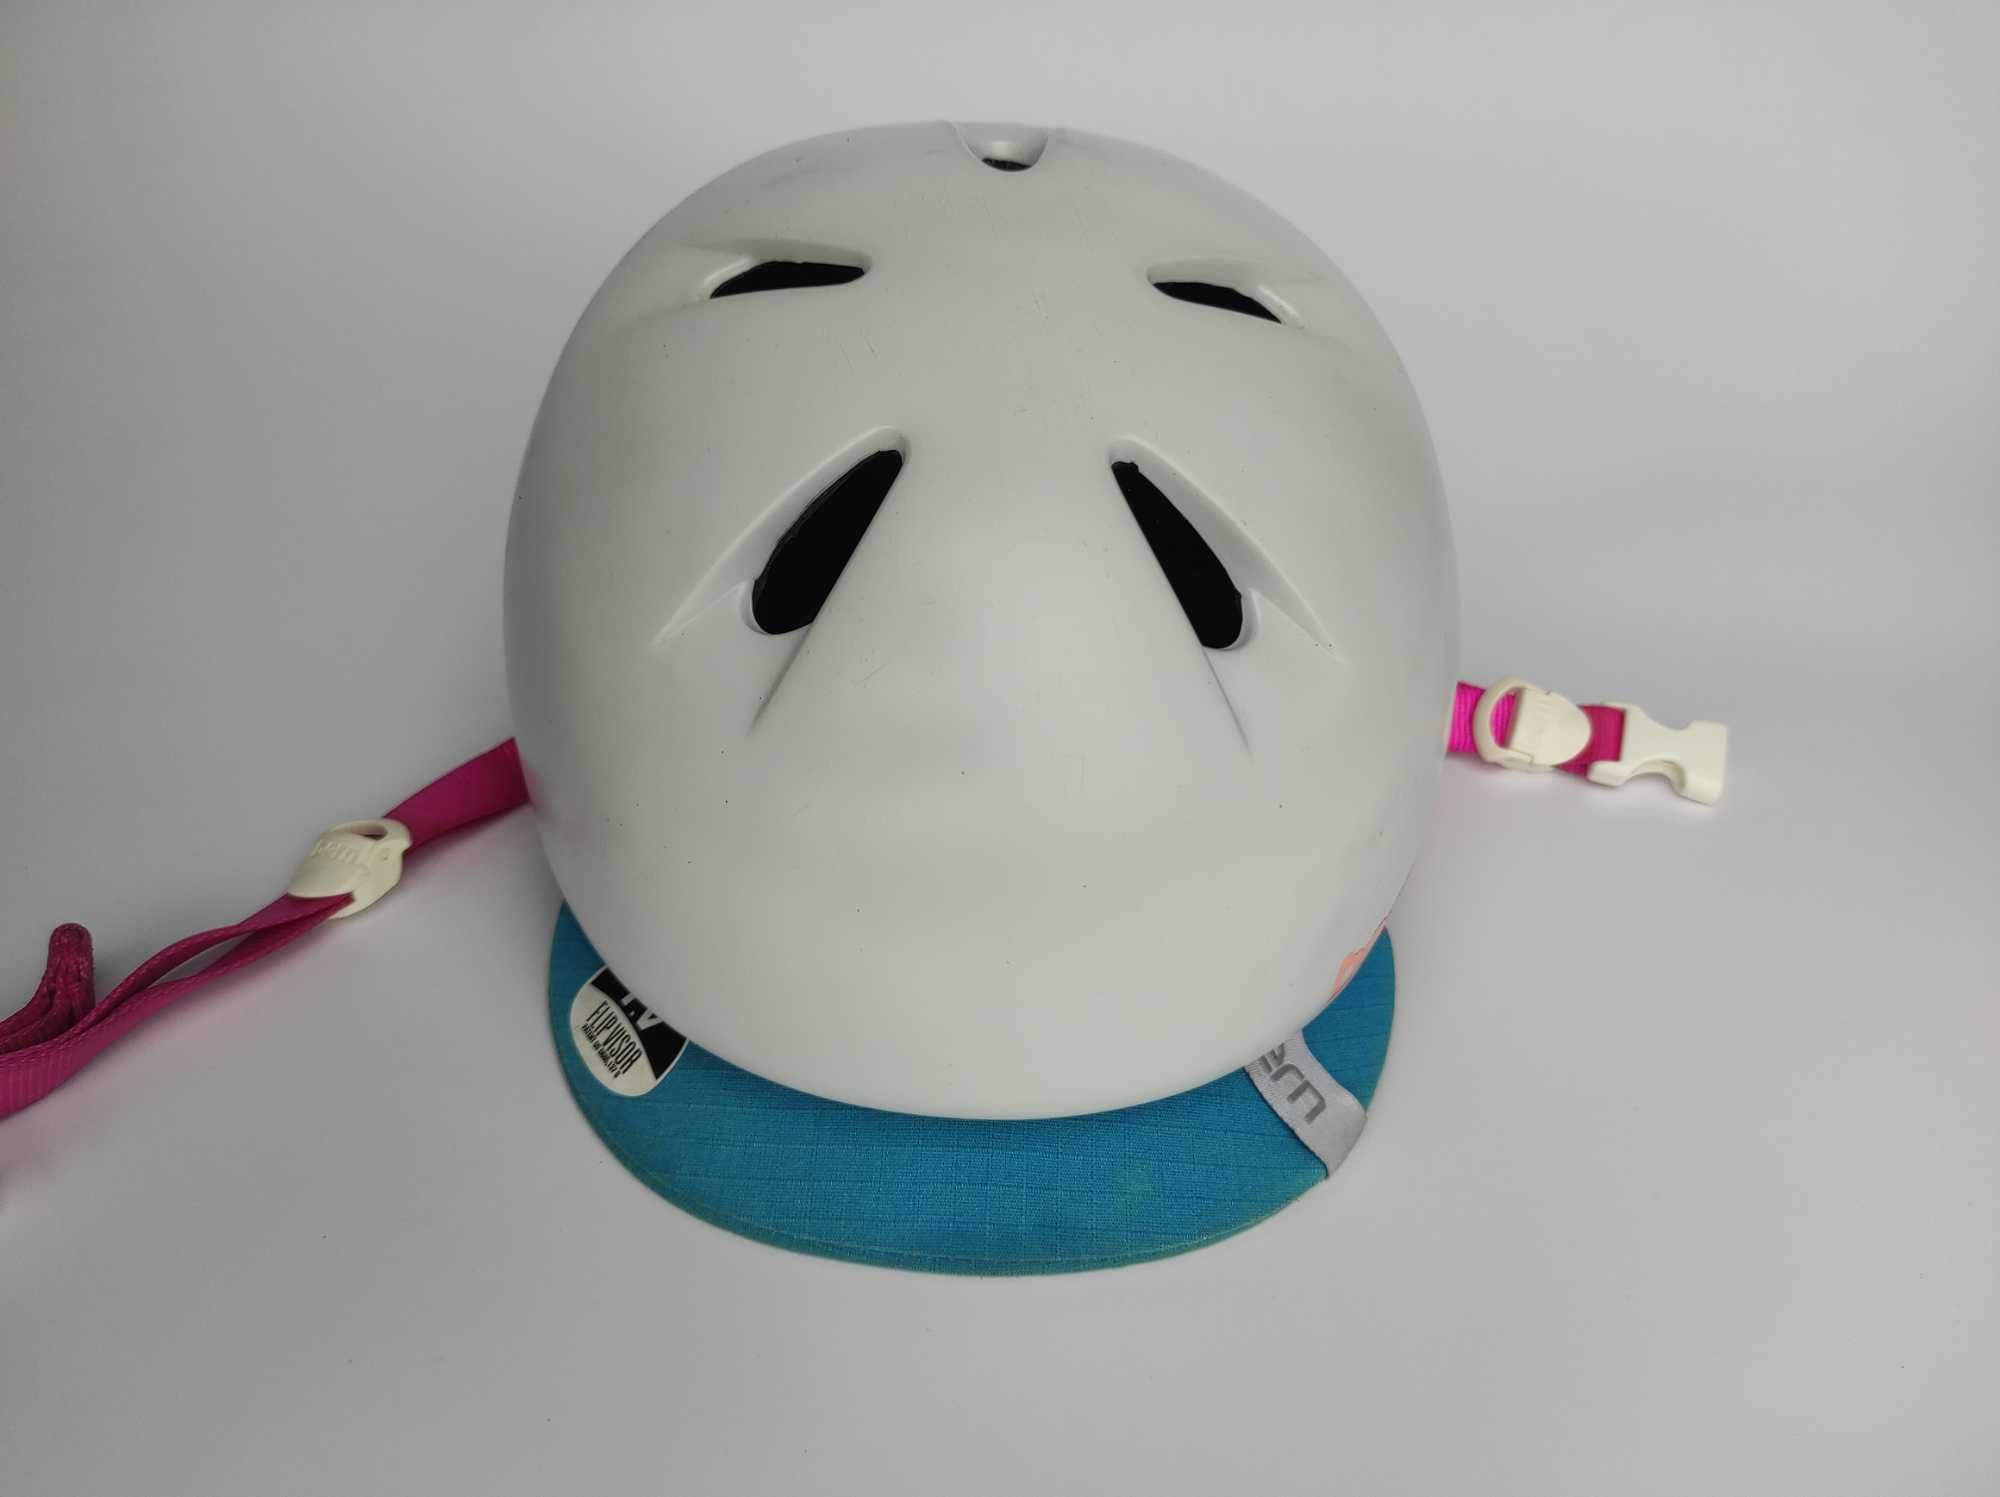 Шлем защитный котелок Bern Nina, размер 48-51.5см, детский